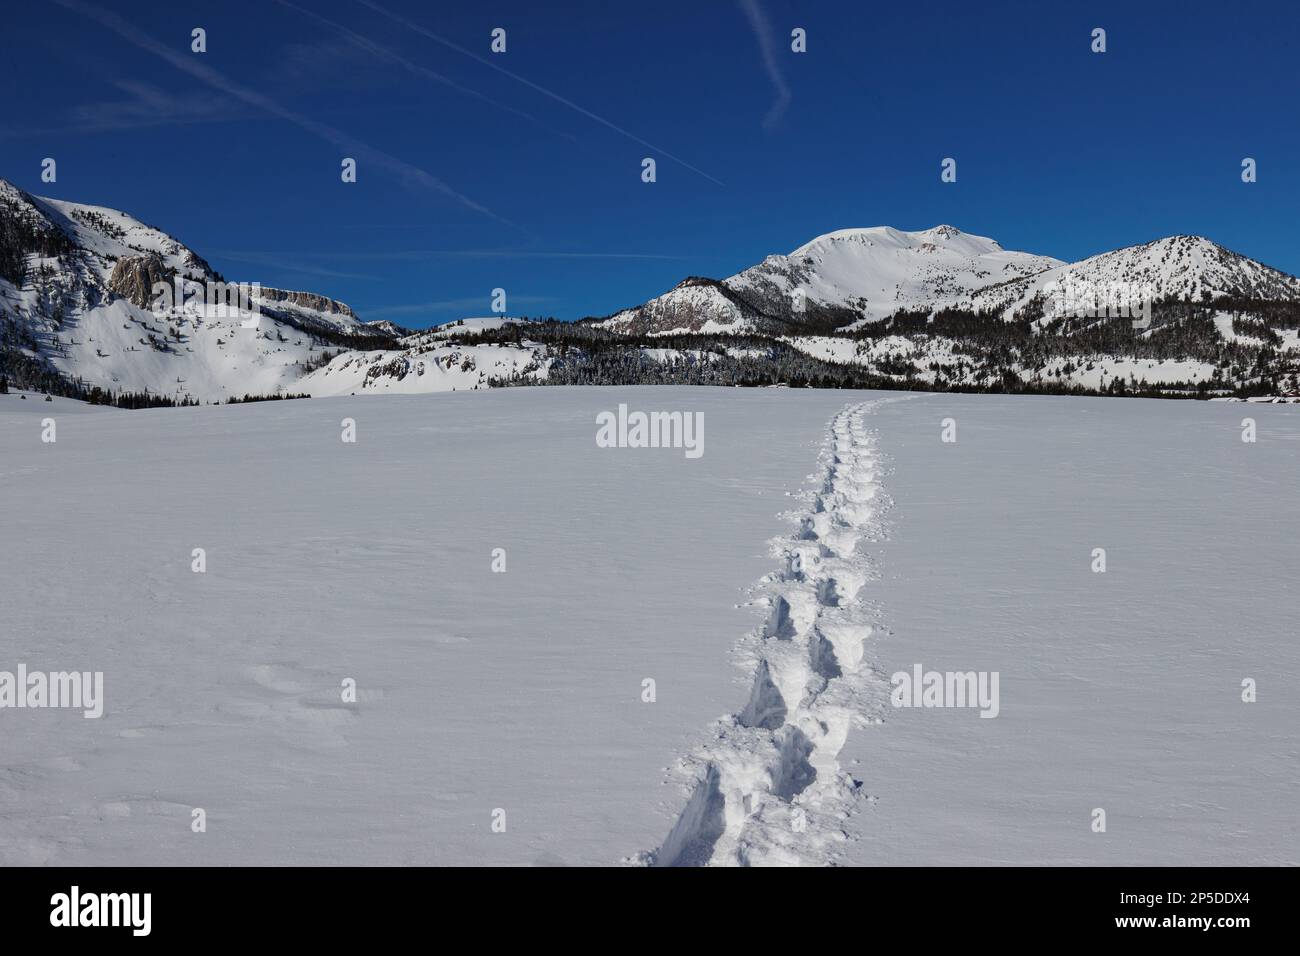 Des pistes de raquettes s'étendent sur un champ couvert de neige en direction de la station de ski de Mammoth Mountain. Mammoth Rock se trouve sur la gauche. Banque D'Images